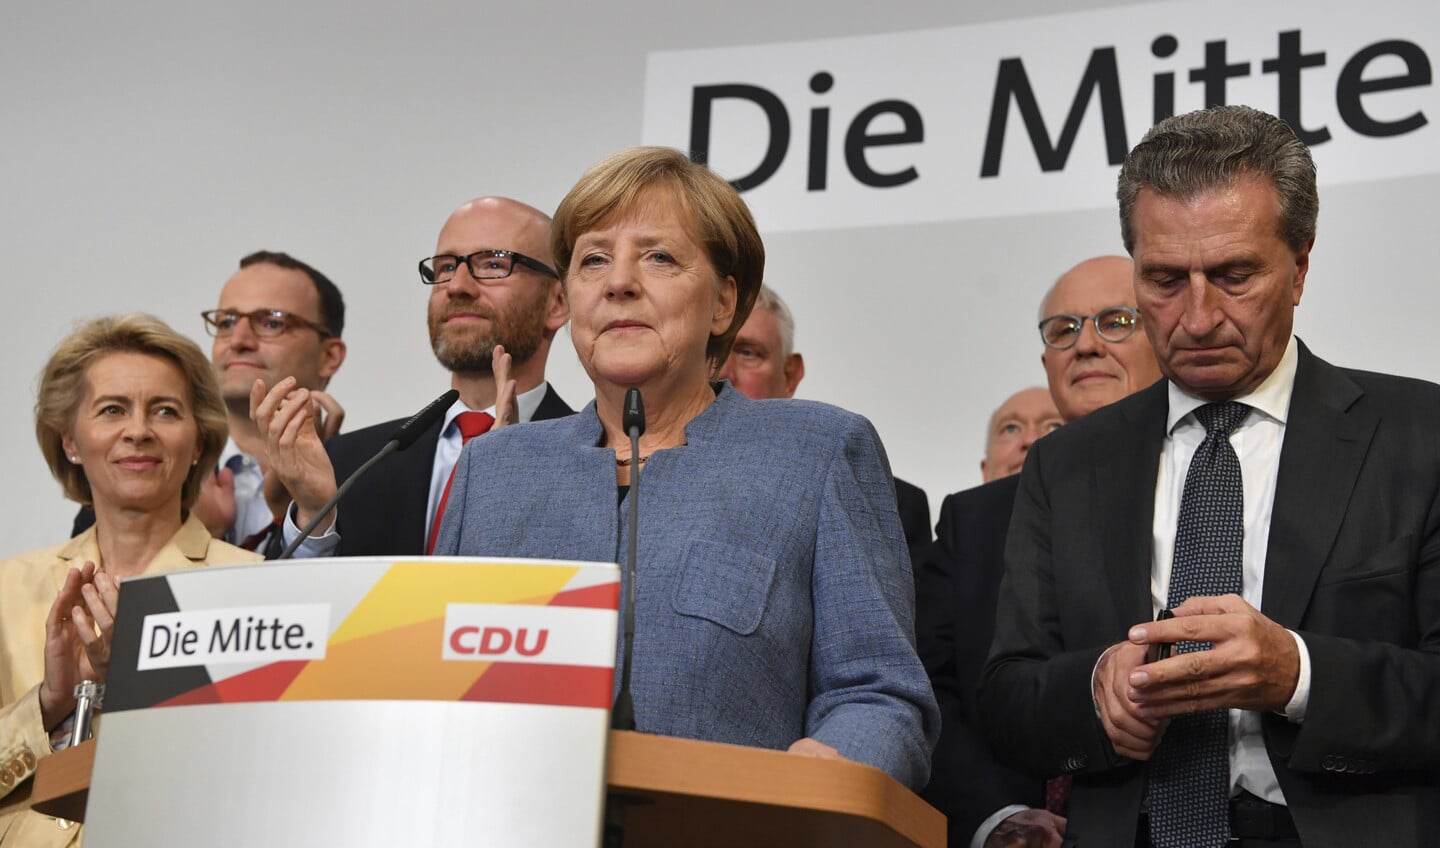 Een winnaar met gemengde gevoelens: bondskanselier Angela Merkel spreekt haar aanhang toe nadat de prognose van de verkiezingsuitslag bekend is geworden.